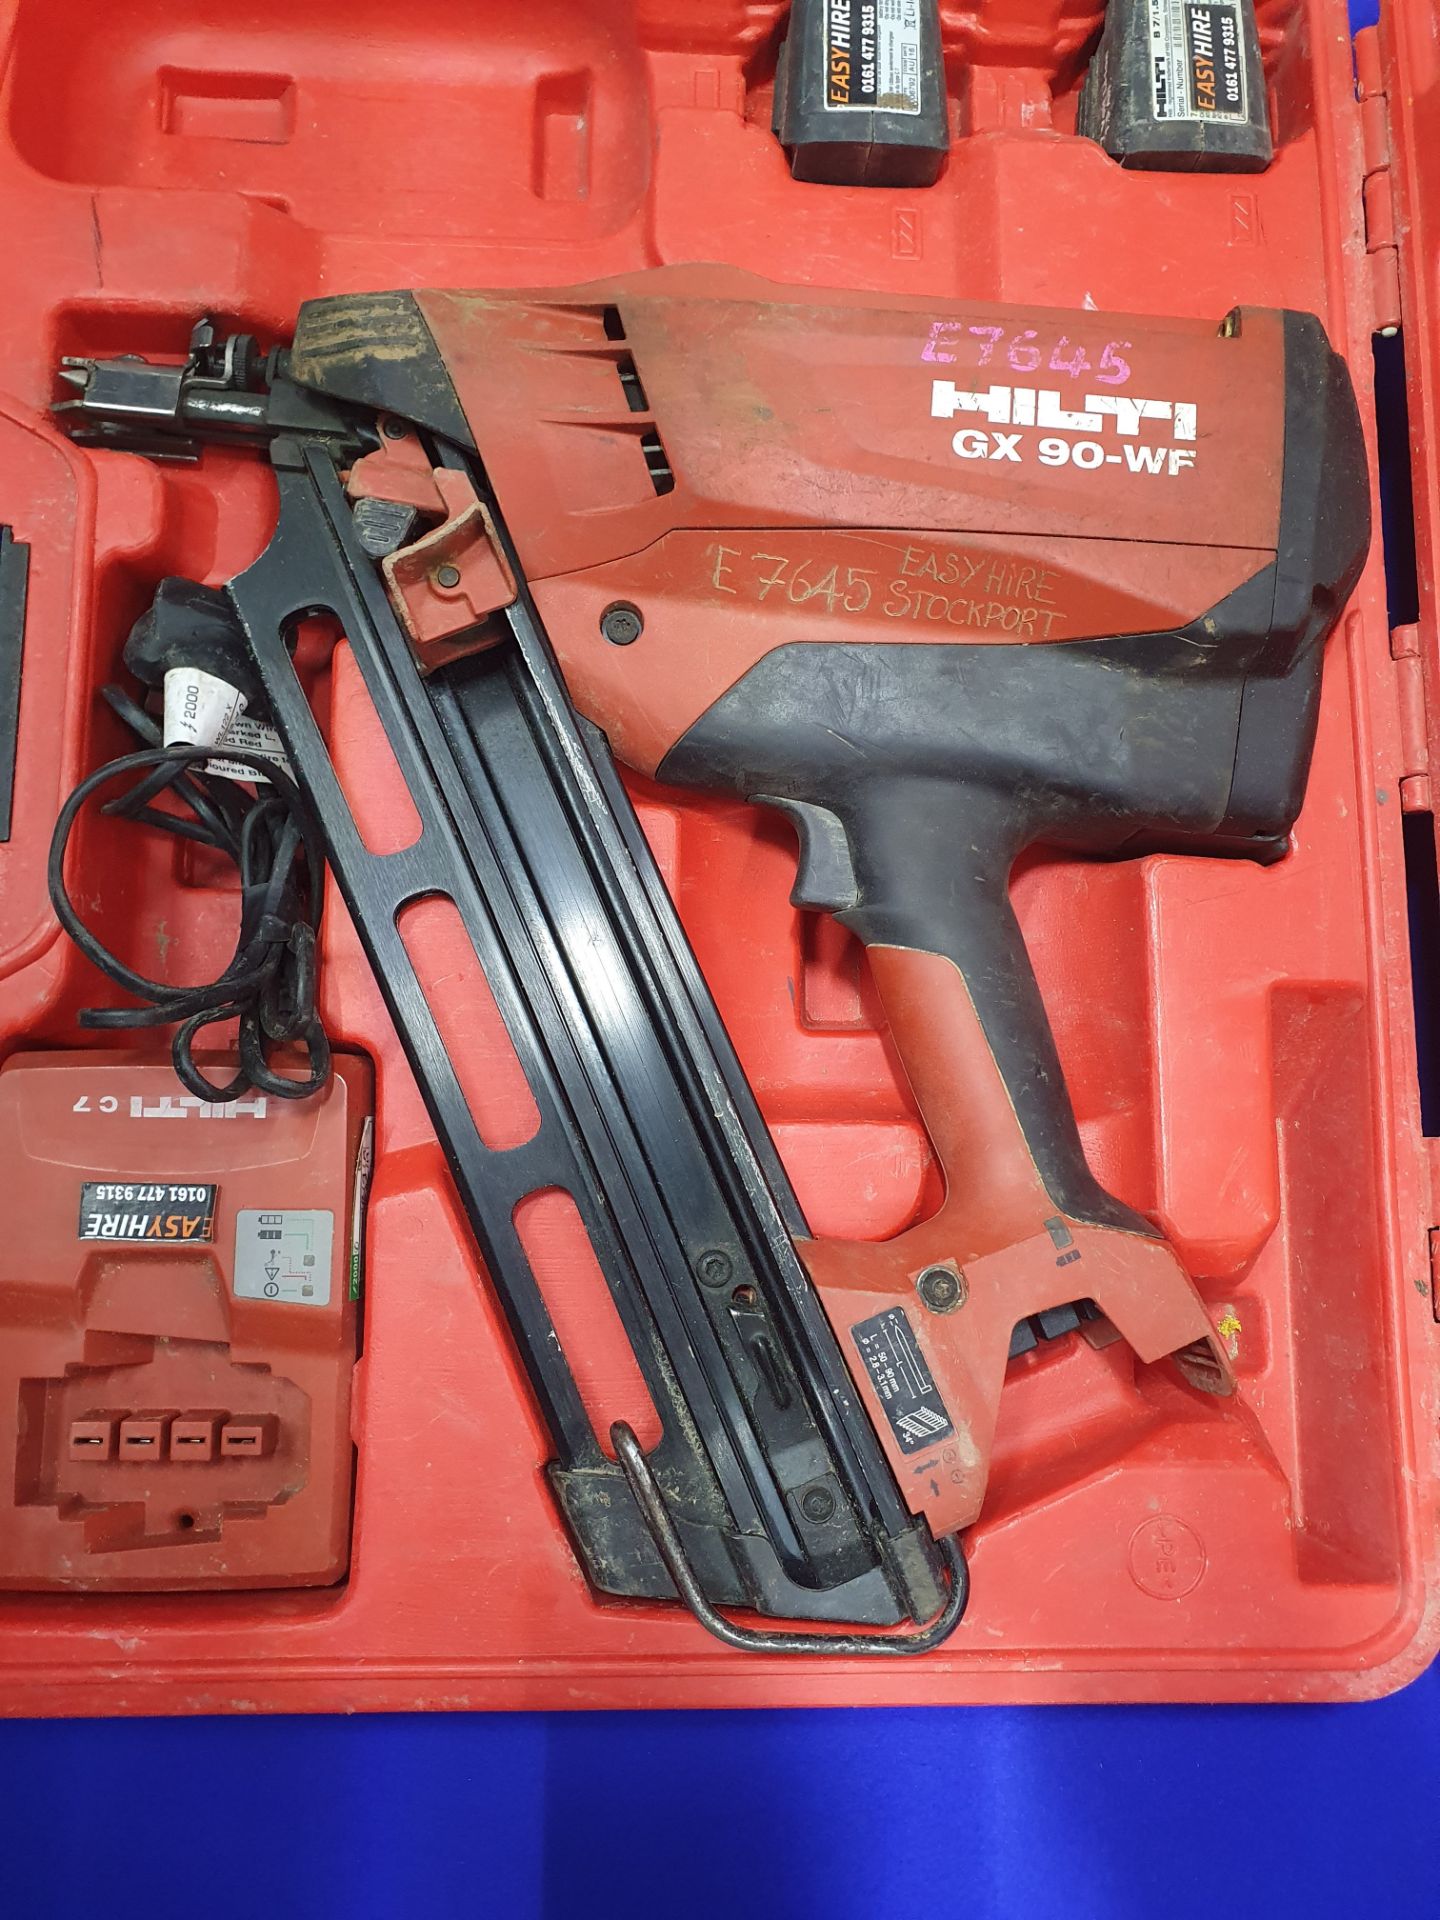 Hilti GX 90-WF Framing Nail Gun in Case - Image 2 of 8